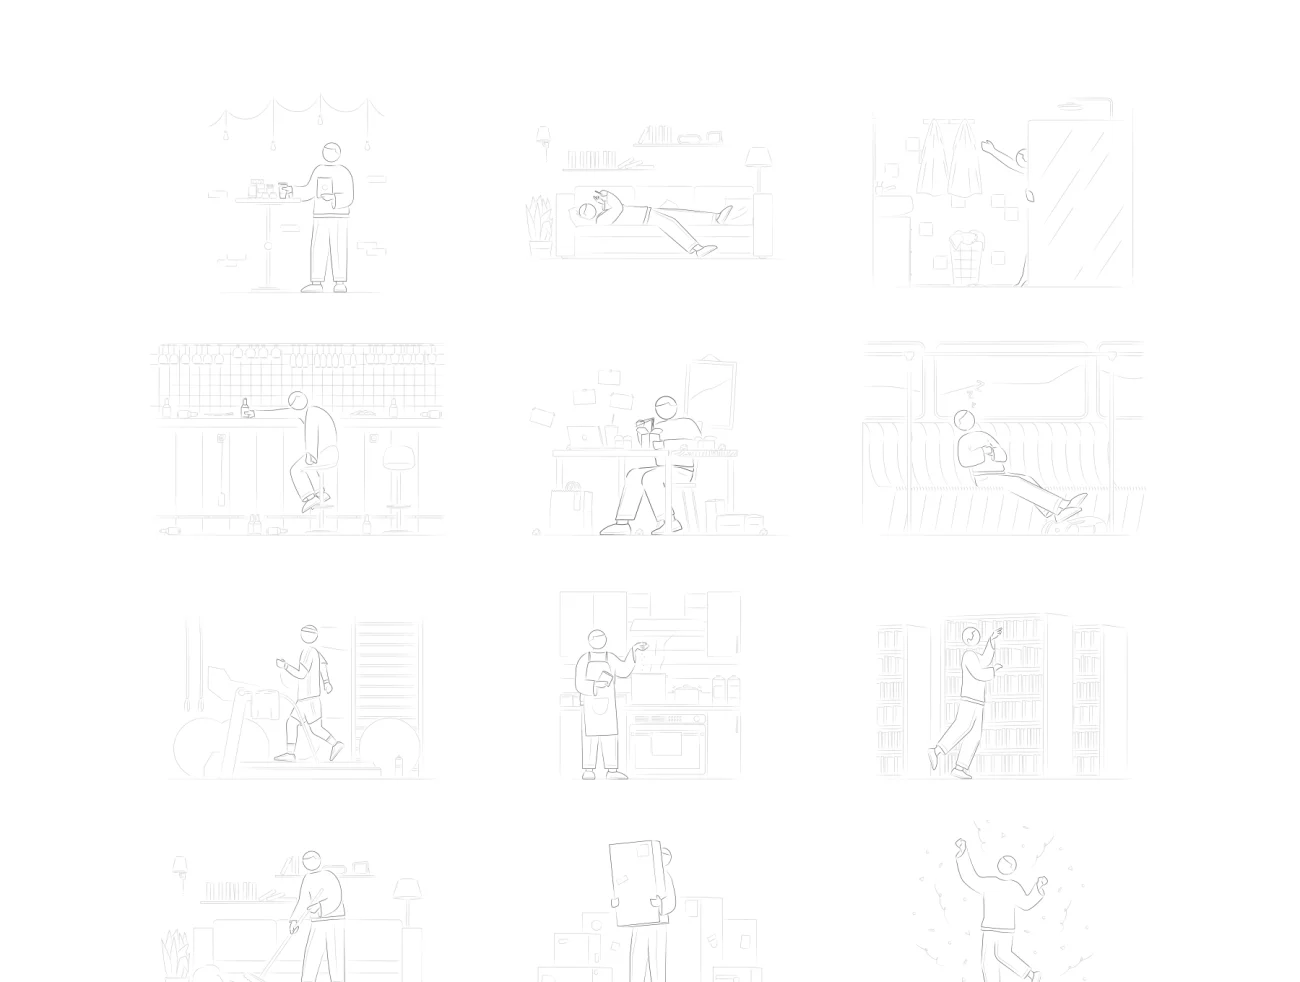 Matt Illustrations 28张手绘线条轮廓生活场景插图-人物插画、场景插画、学习生活、插画、插画功能、插画风格、状态页、社交购物、线条手绘、营销创业、趣味漫画、运动健身-到位啦UI